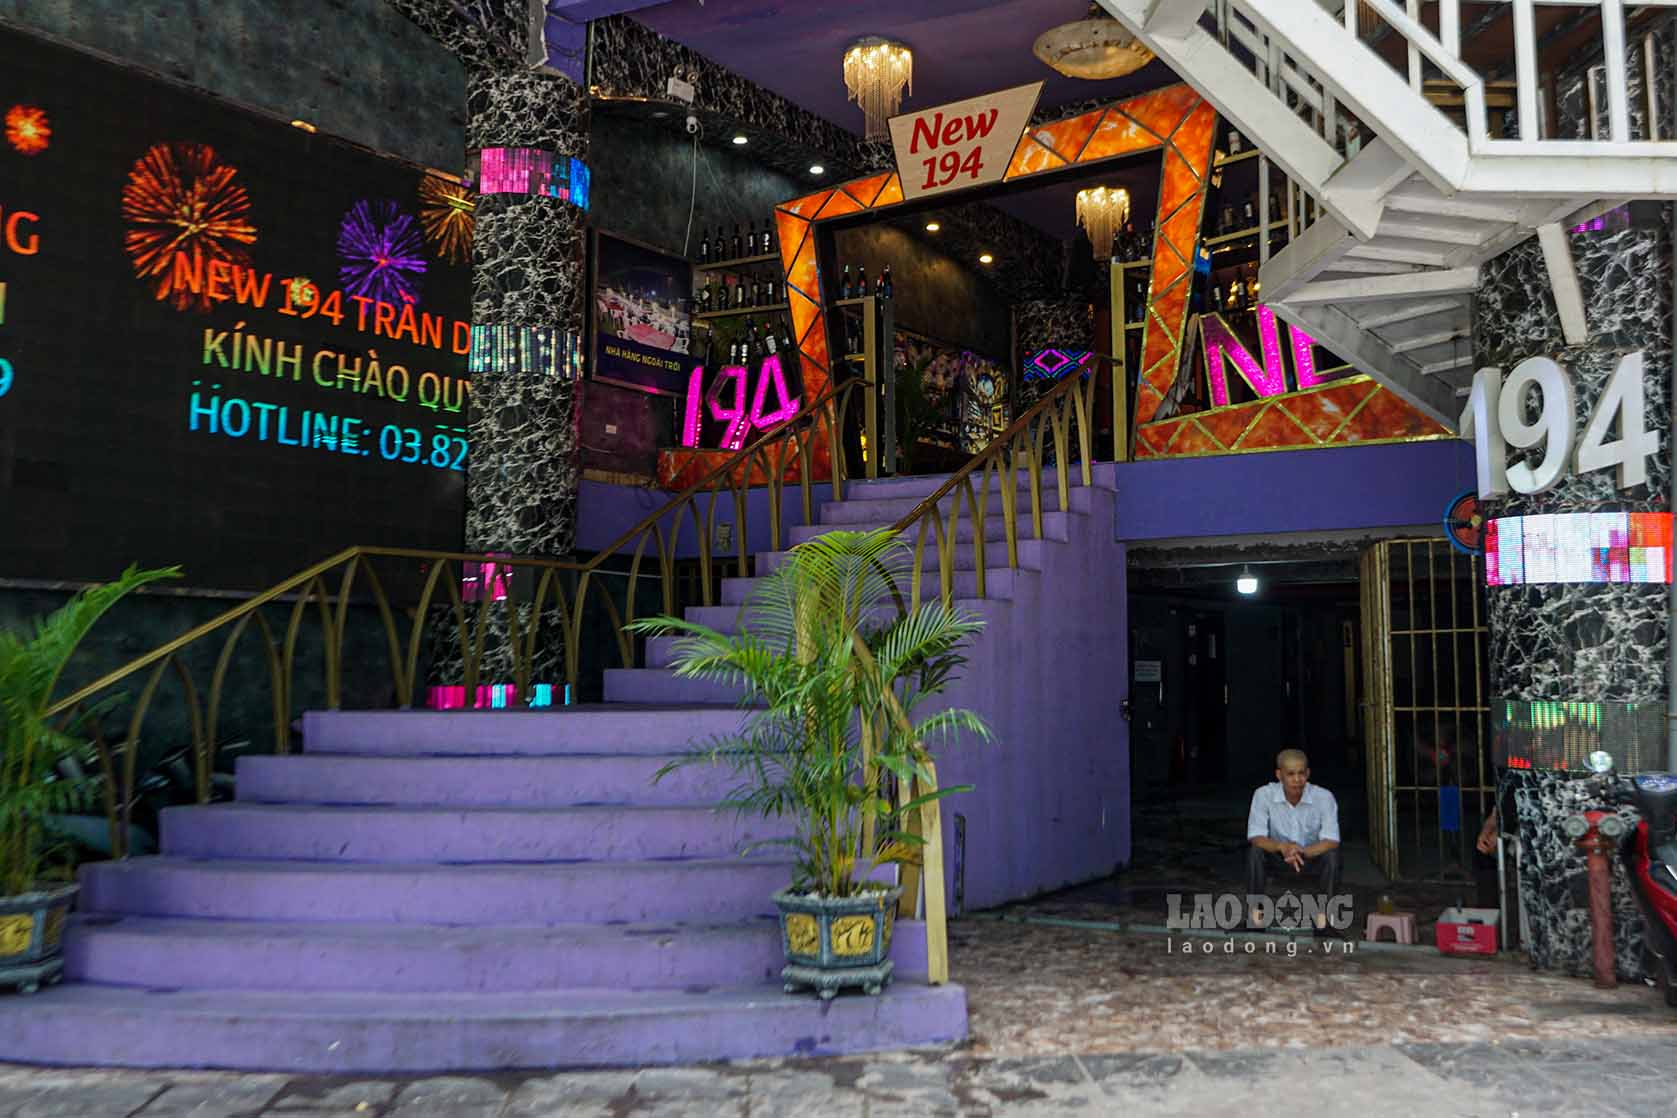 Tương tự tại quán karaoke tại số 194 đường Trần Duy Hưng vẫn mở cửa và chạy màn hình led quảng cáo để thu hút khách hàng sử dụng dịch vụ.